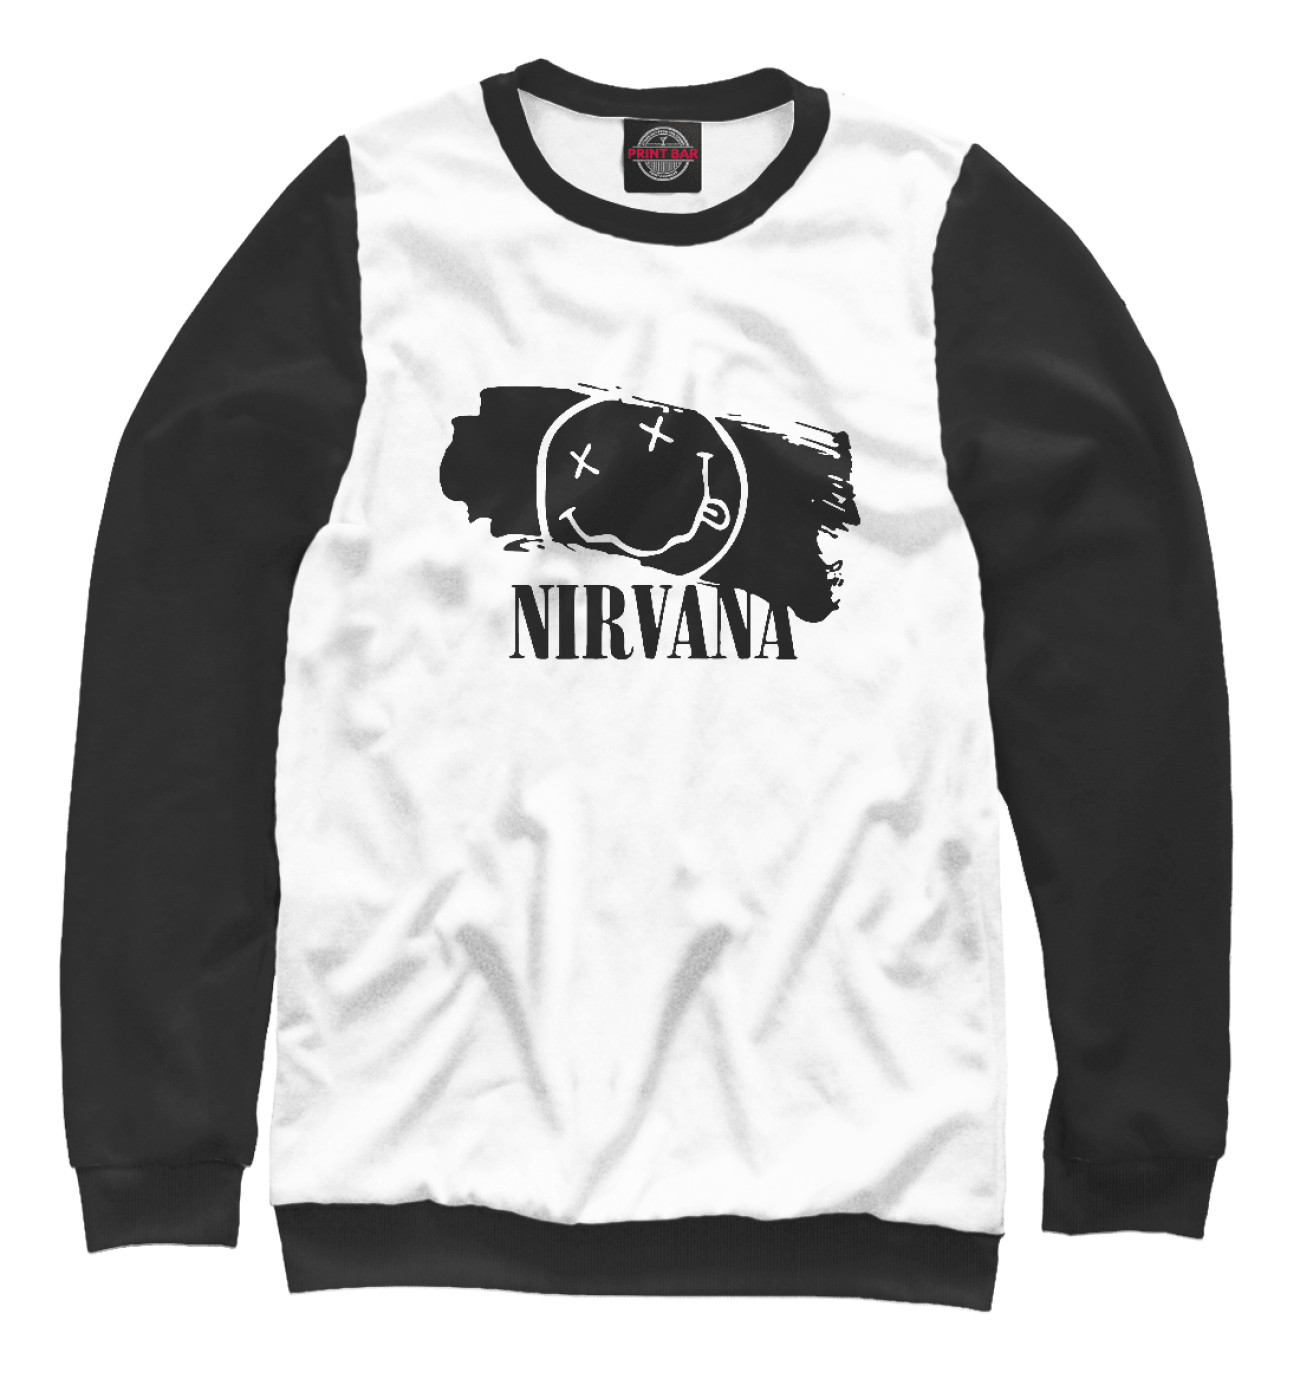 Женский Свитшот Nirvana, артикул: NIR-461034-swi-1